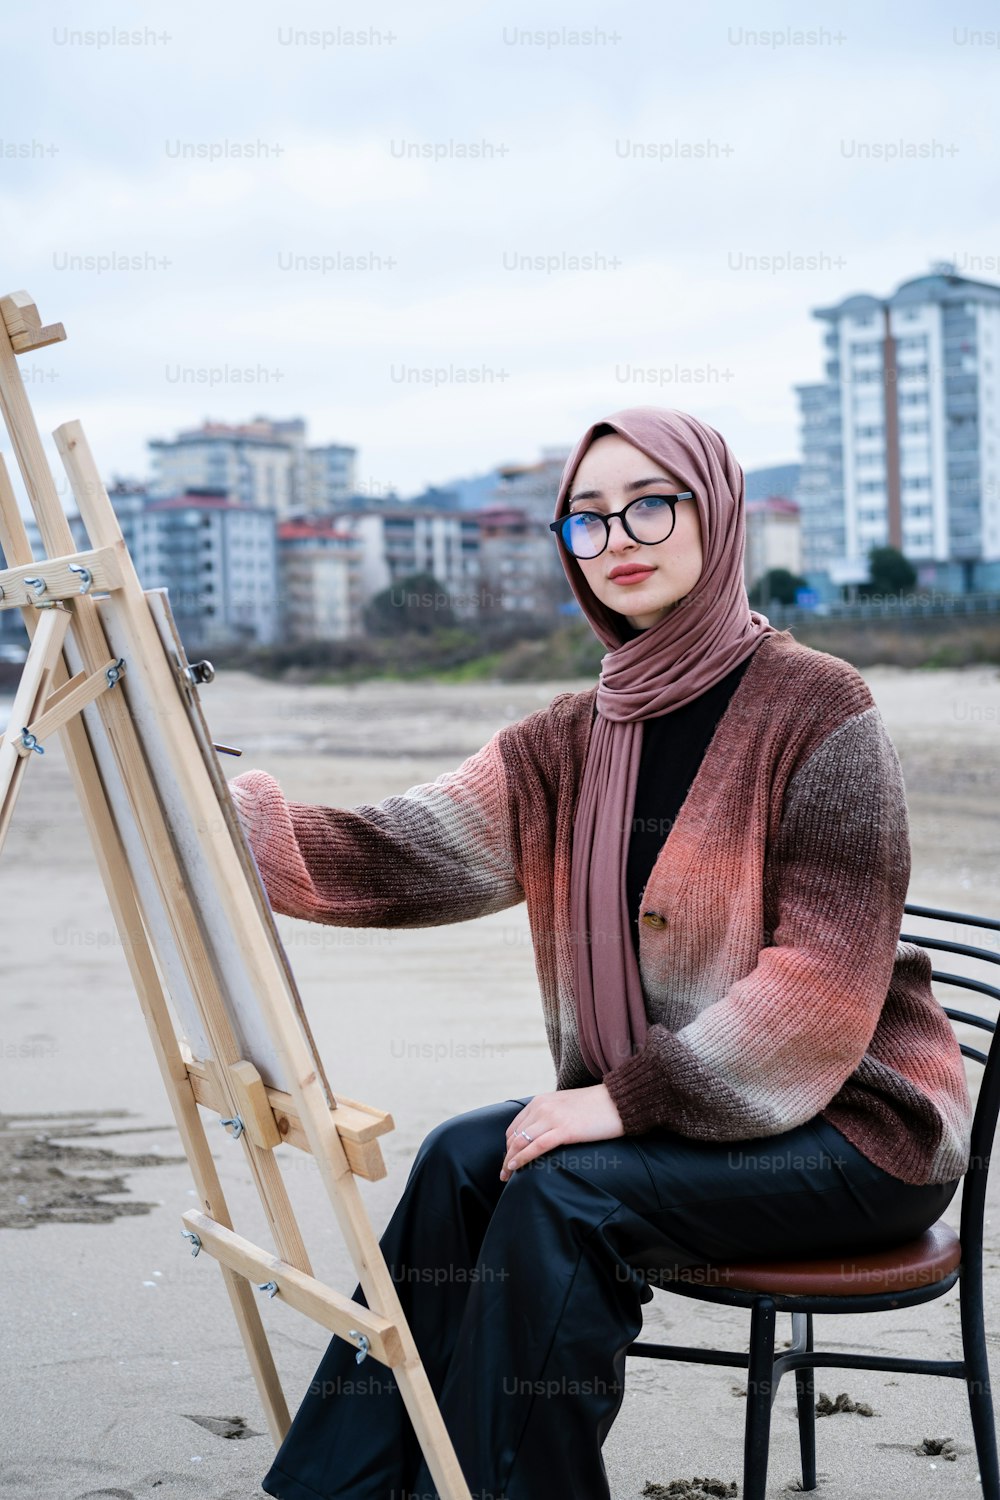 Une femme en hijab assise sur une chaise avec un chevalet de peinture